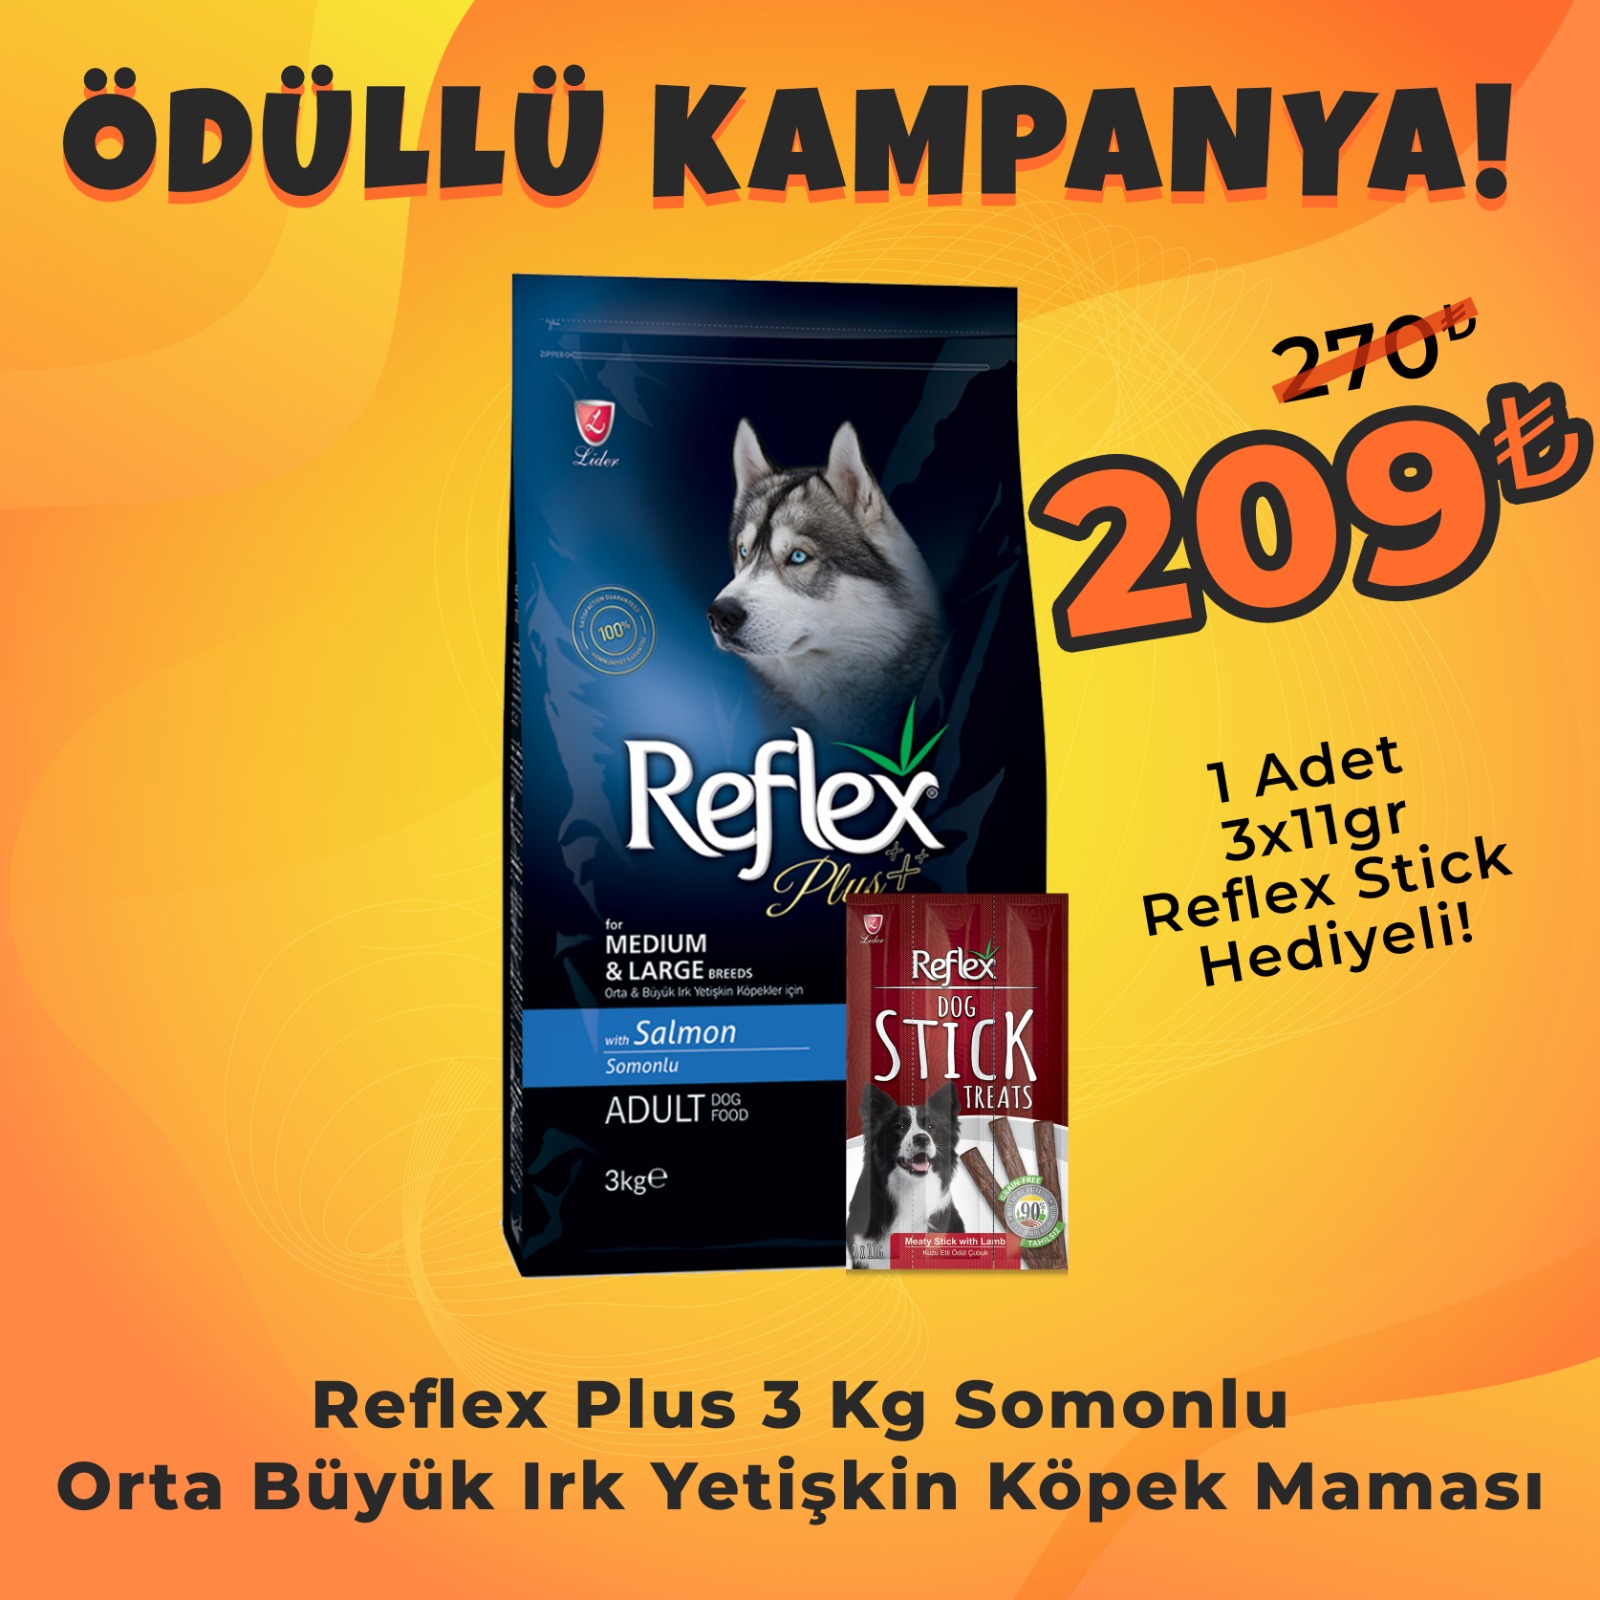 Reflex Plus Orta Büyük Irk Somonlu Yetişkin Köpek Maması 3 Kg + Reflex Köpek Stick Ödül Hediyeli 3x11 Gr